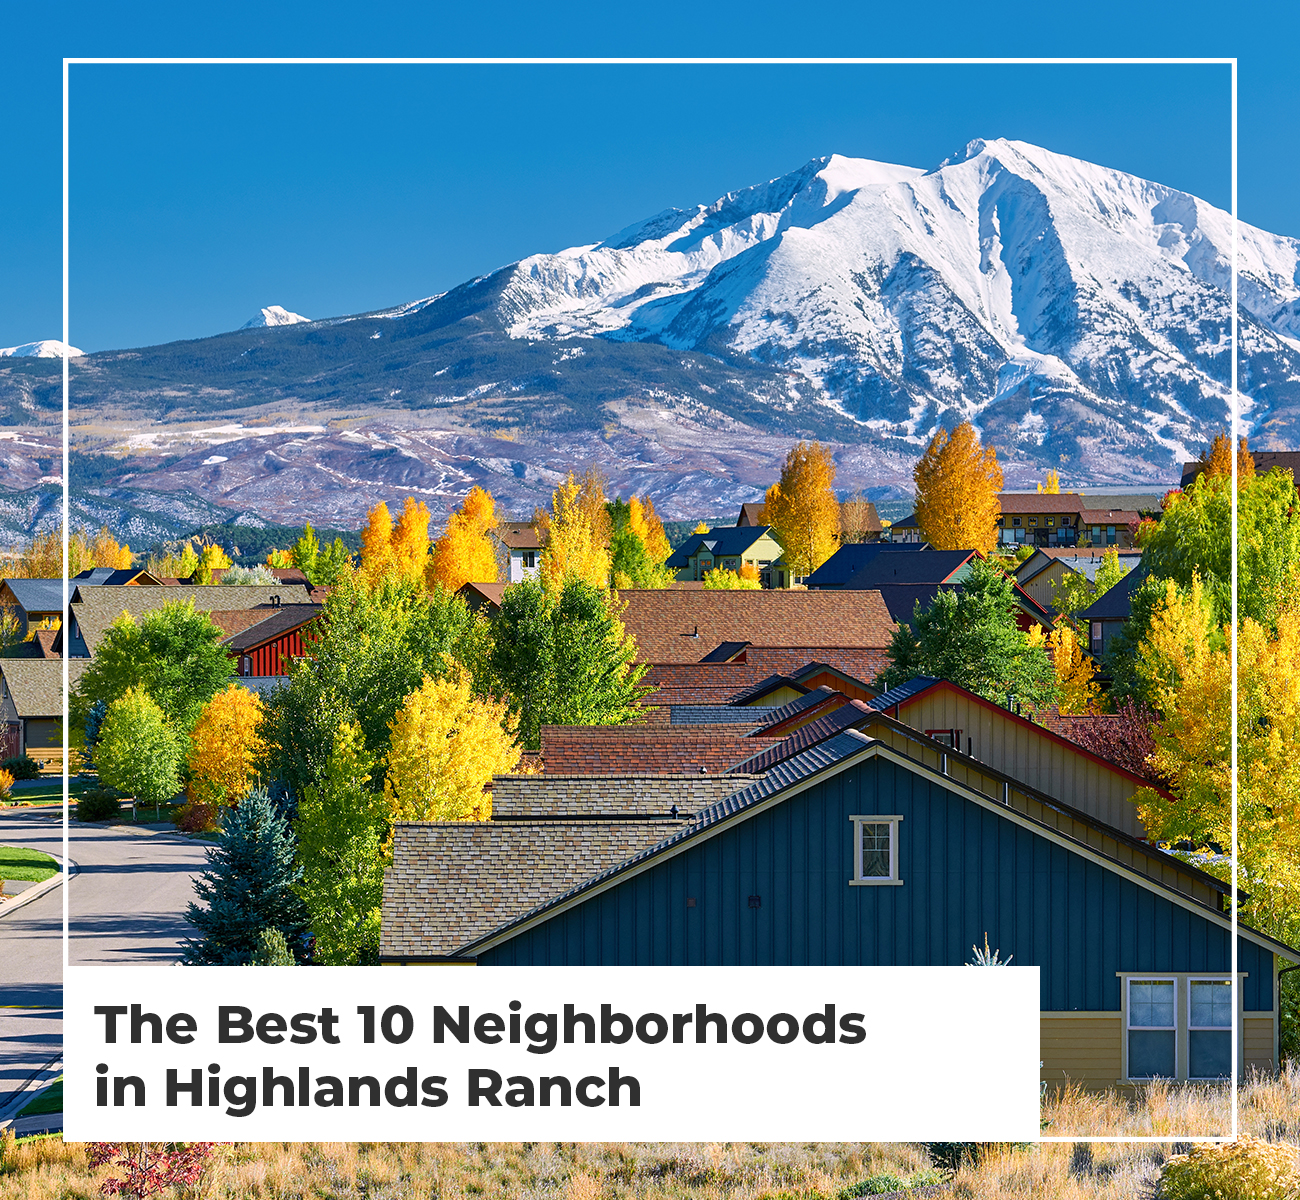 The Best 10 Neighborhoods in Highlands Ranch